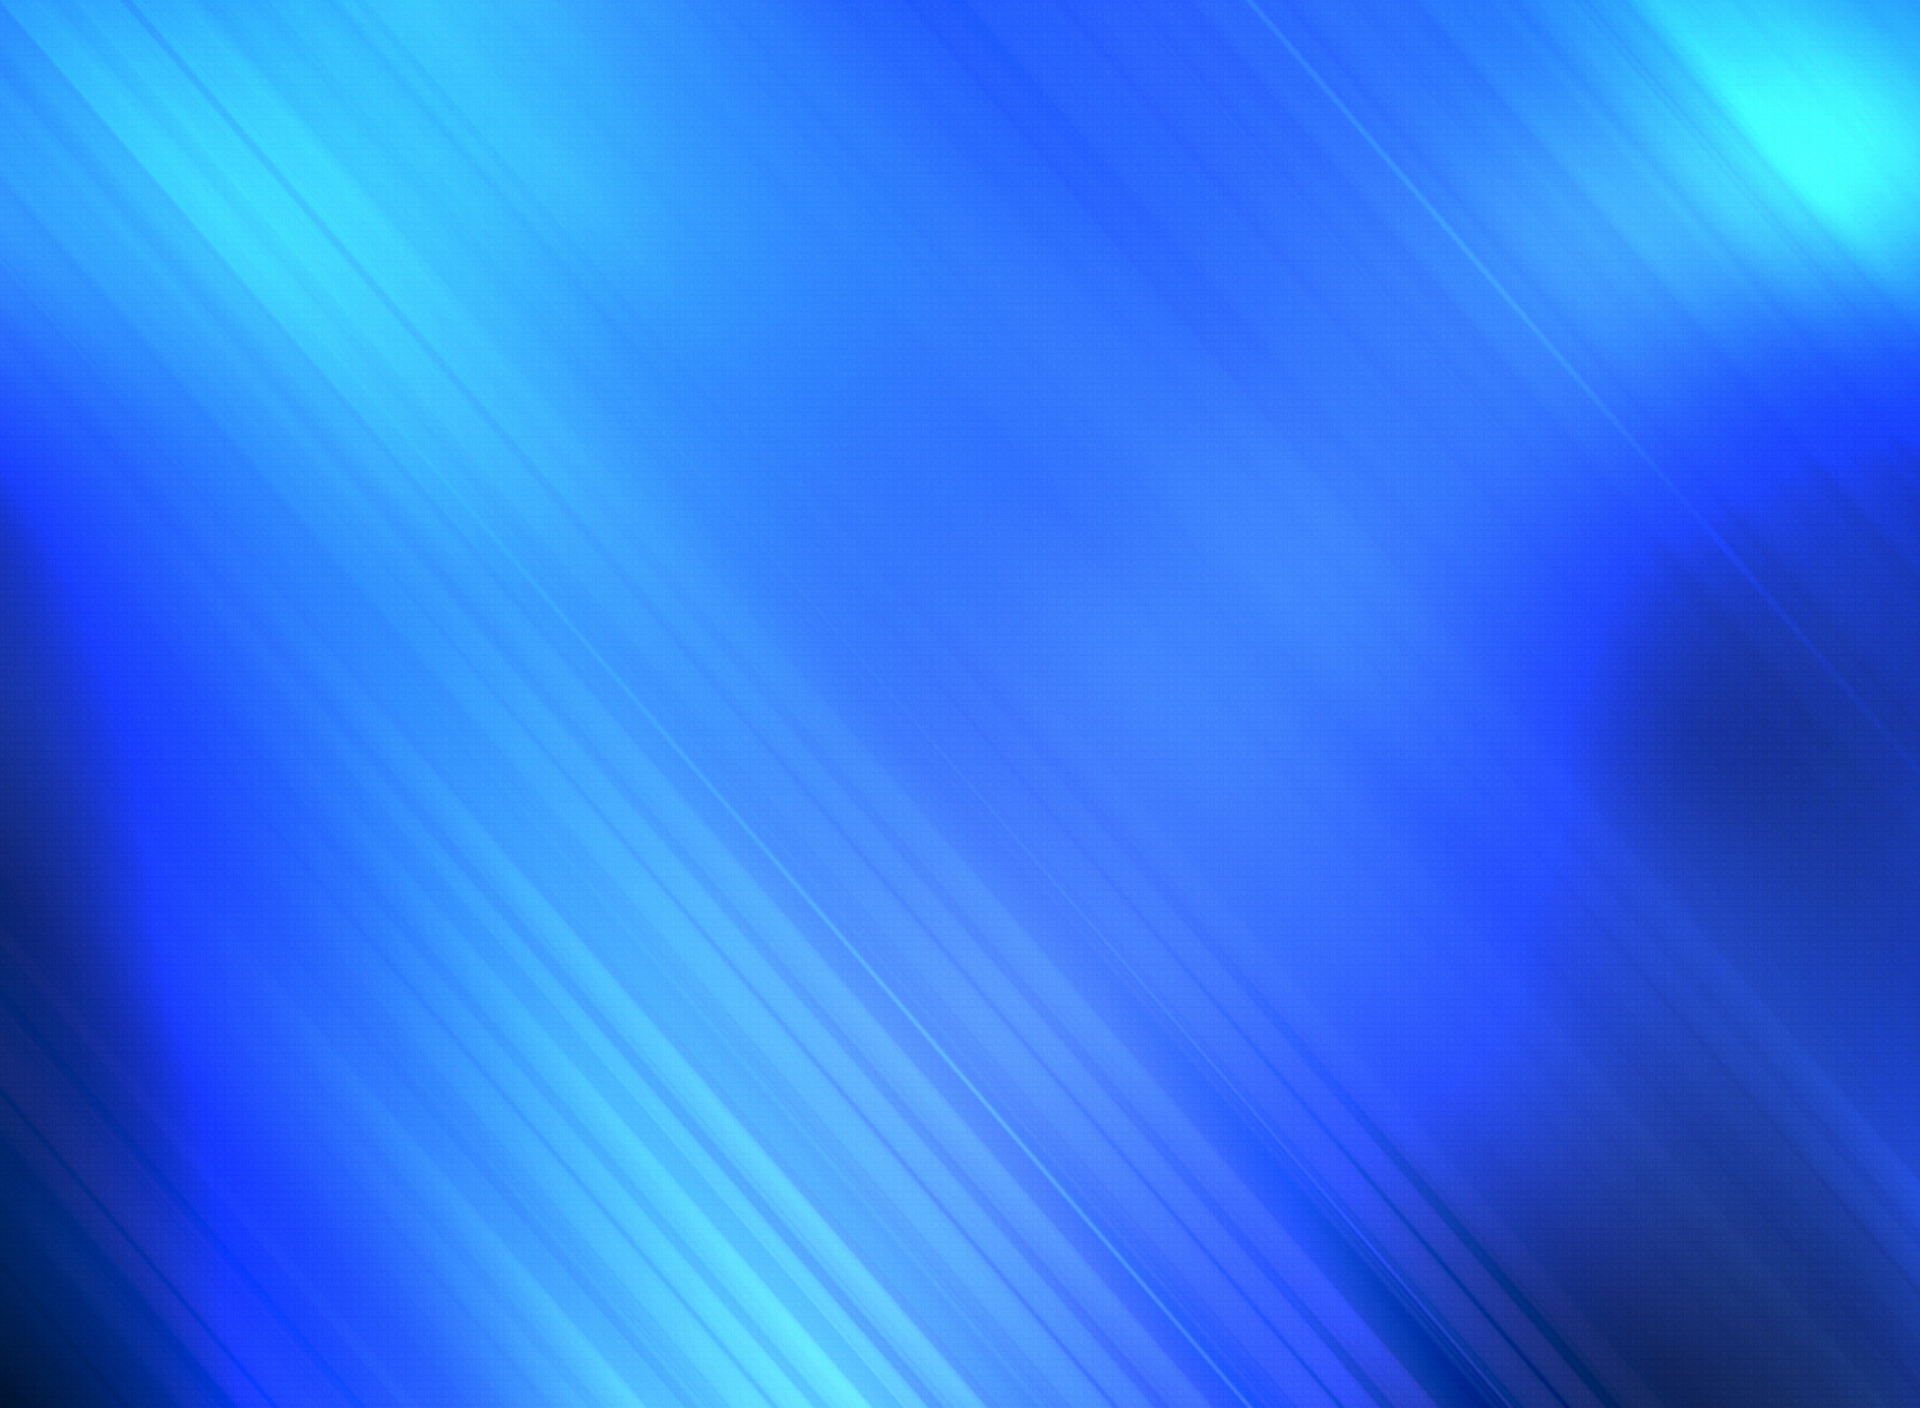 All Blue screenshot #1 1920x1408